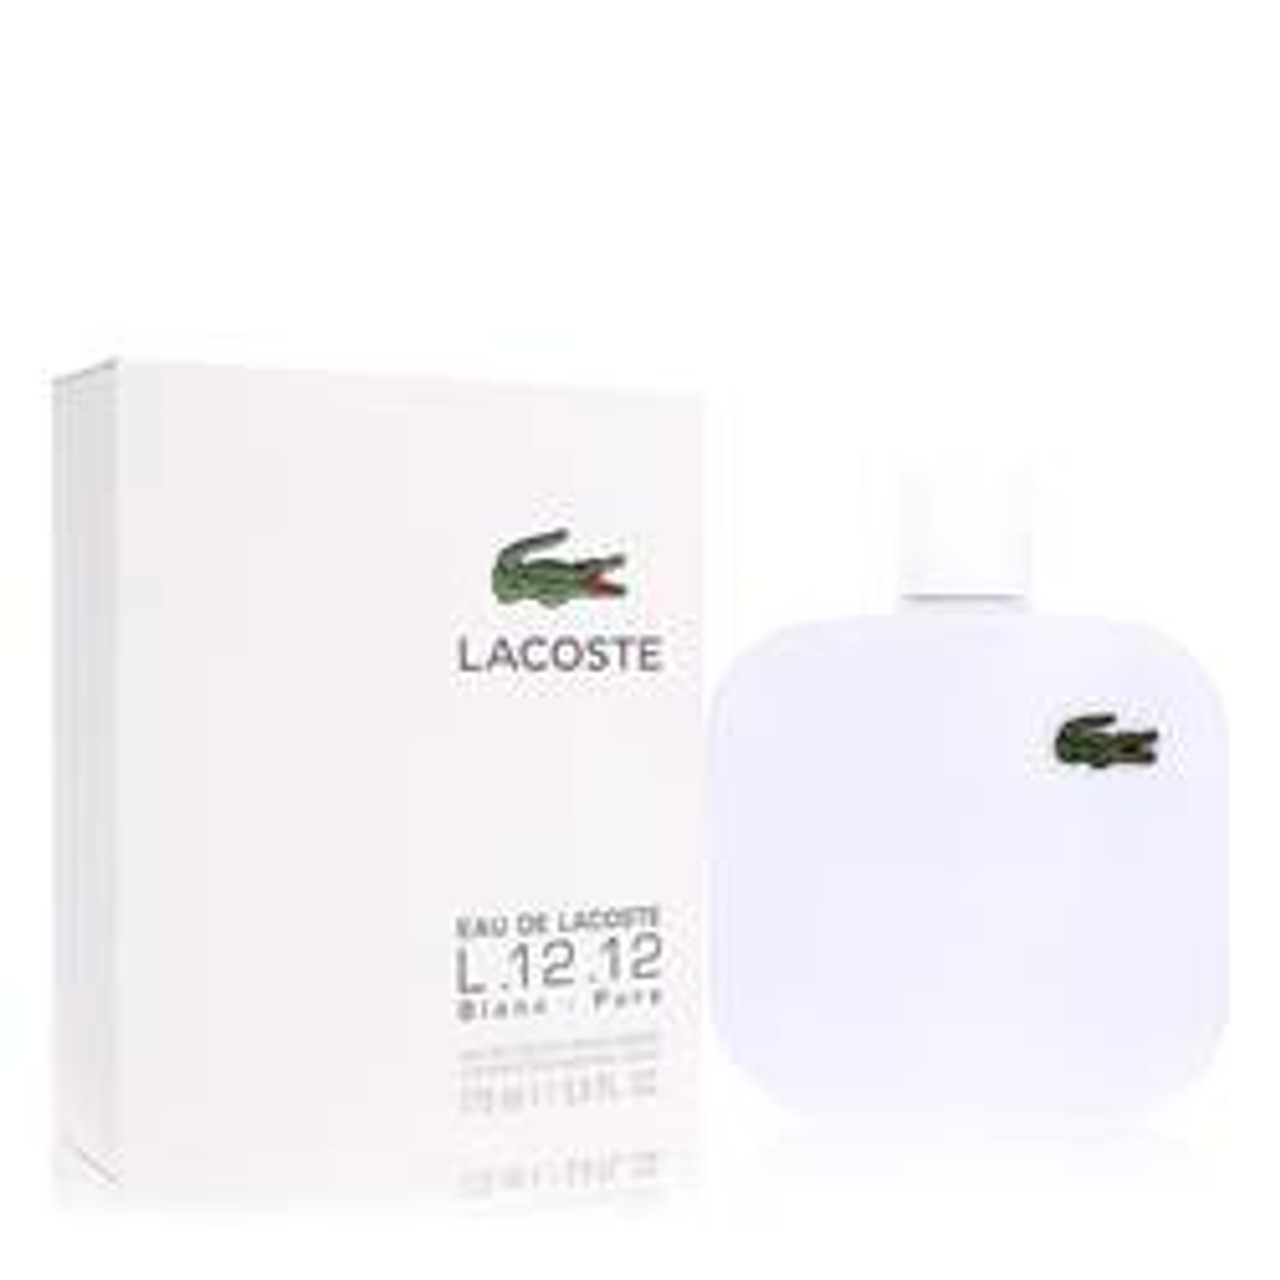 Lacoste Eau De Lacoste L.12.12 Blanc Cologne By Lacoste Eau De Toilette Spray 5.9 oz for Men - *Pre-Order